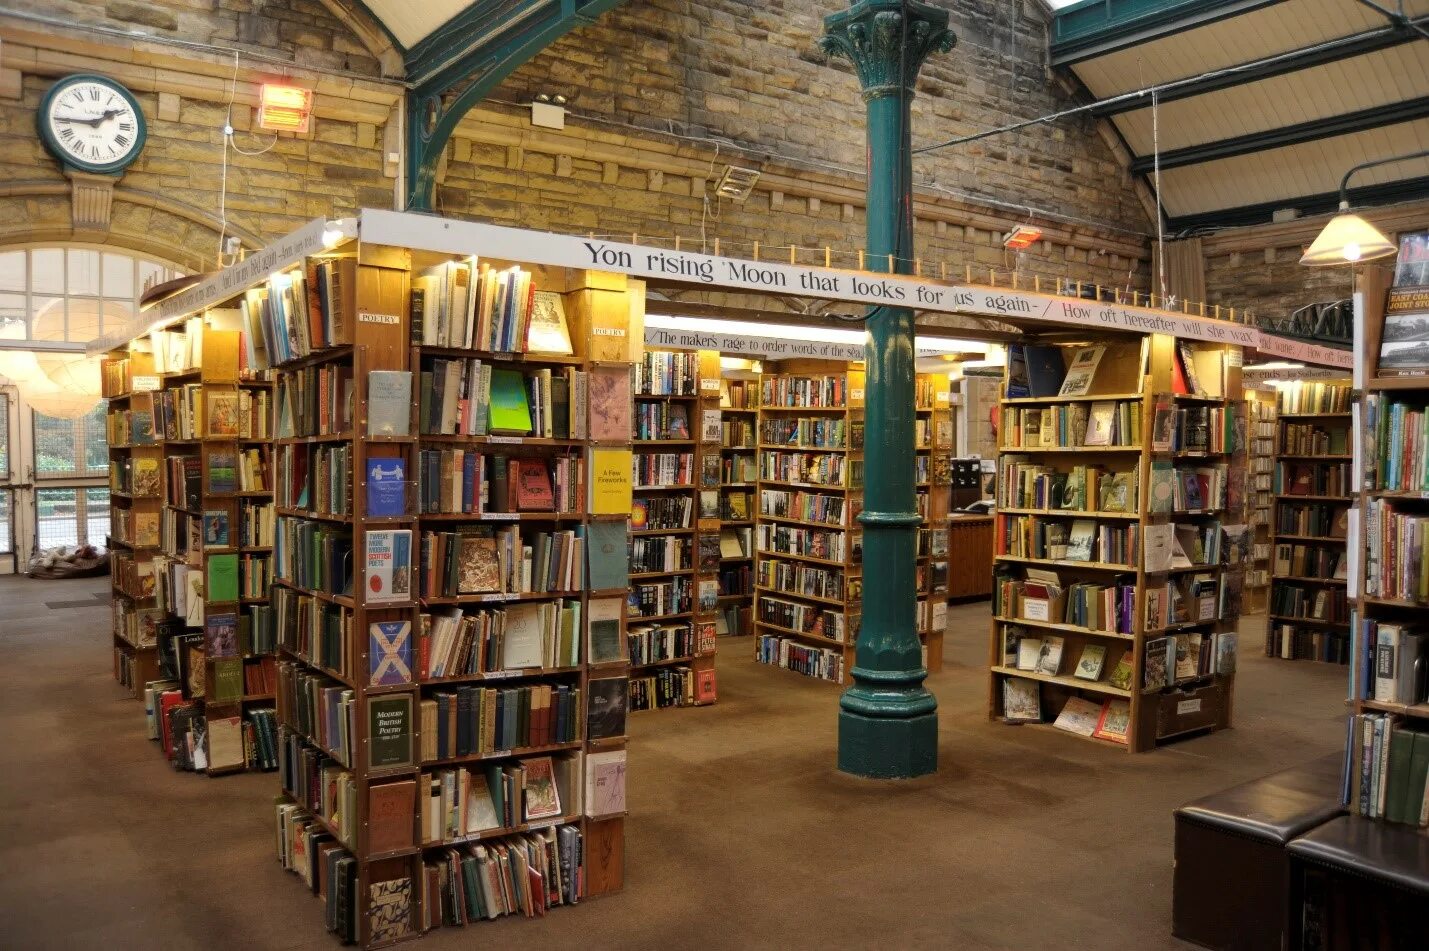 Barter books, Алник, Великобритания. Книжный магазин в Англии. Винтажный книжный магазин.